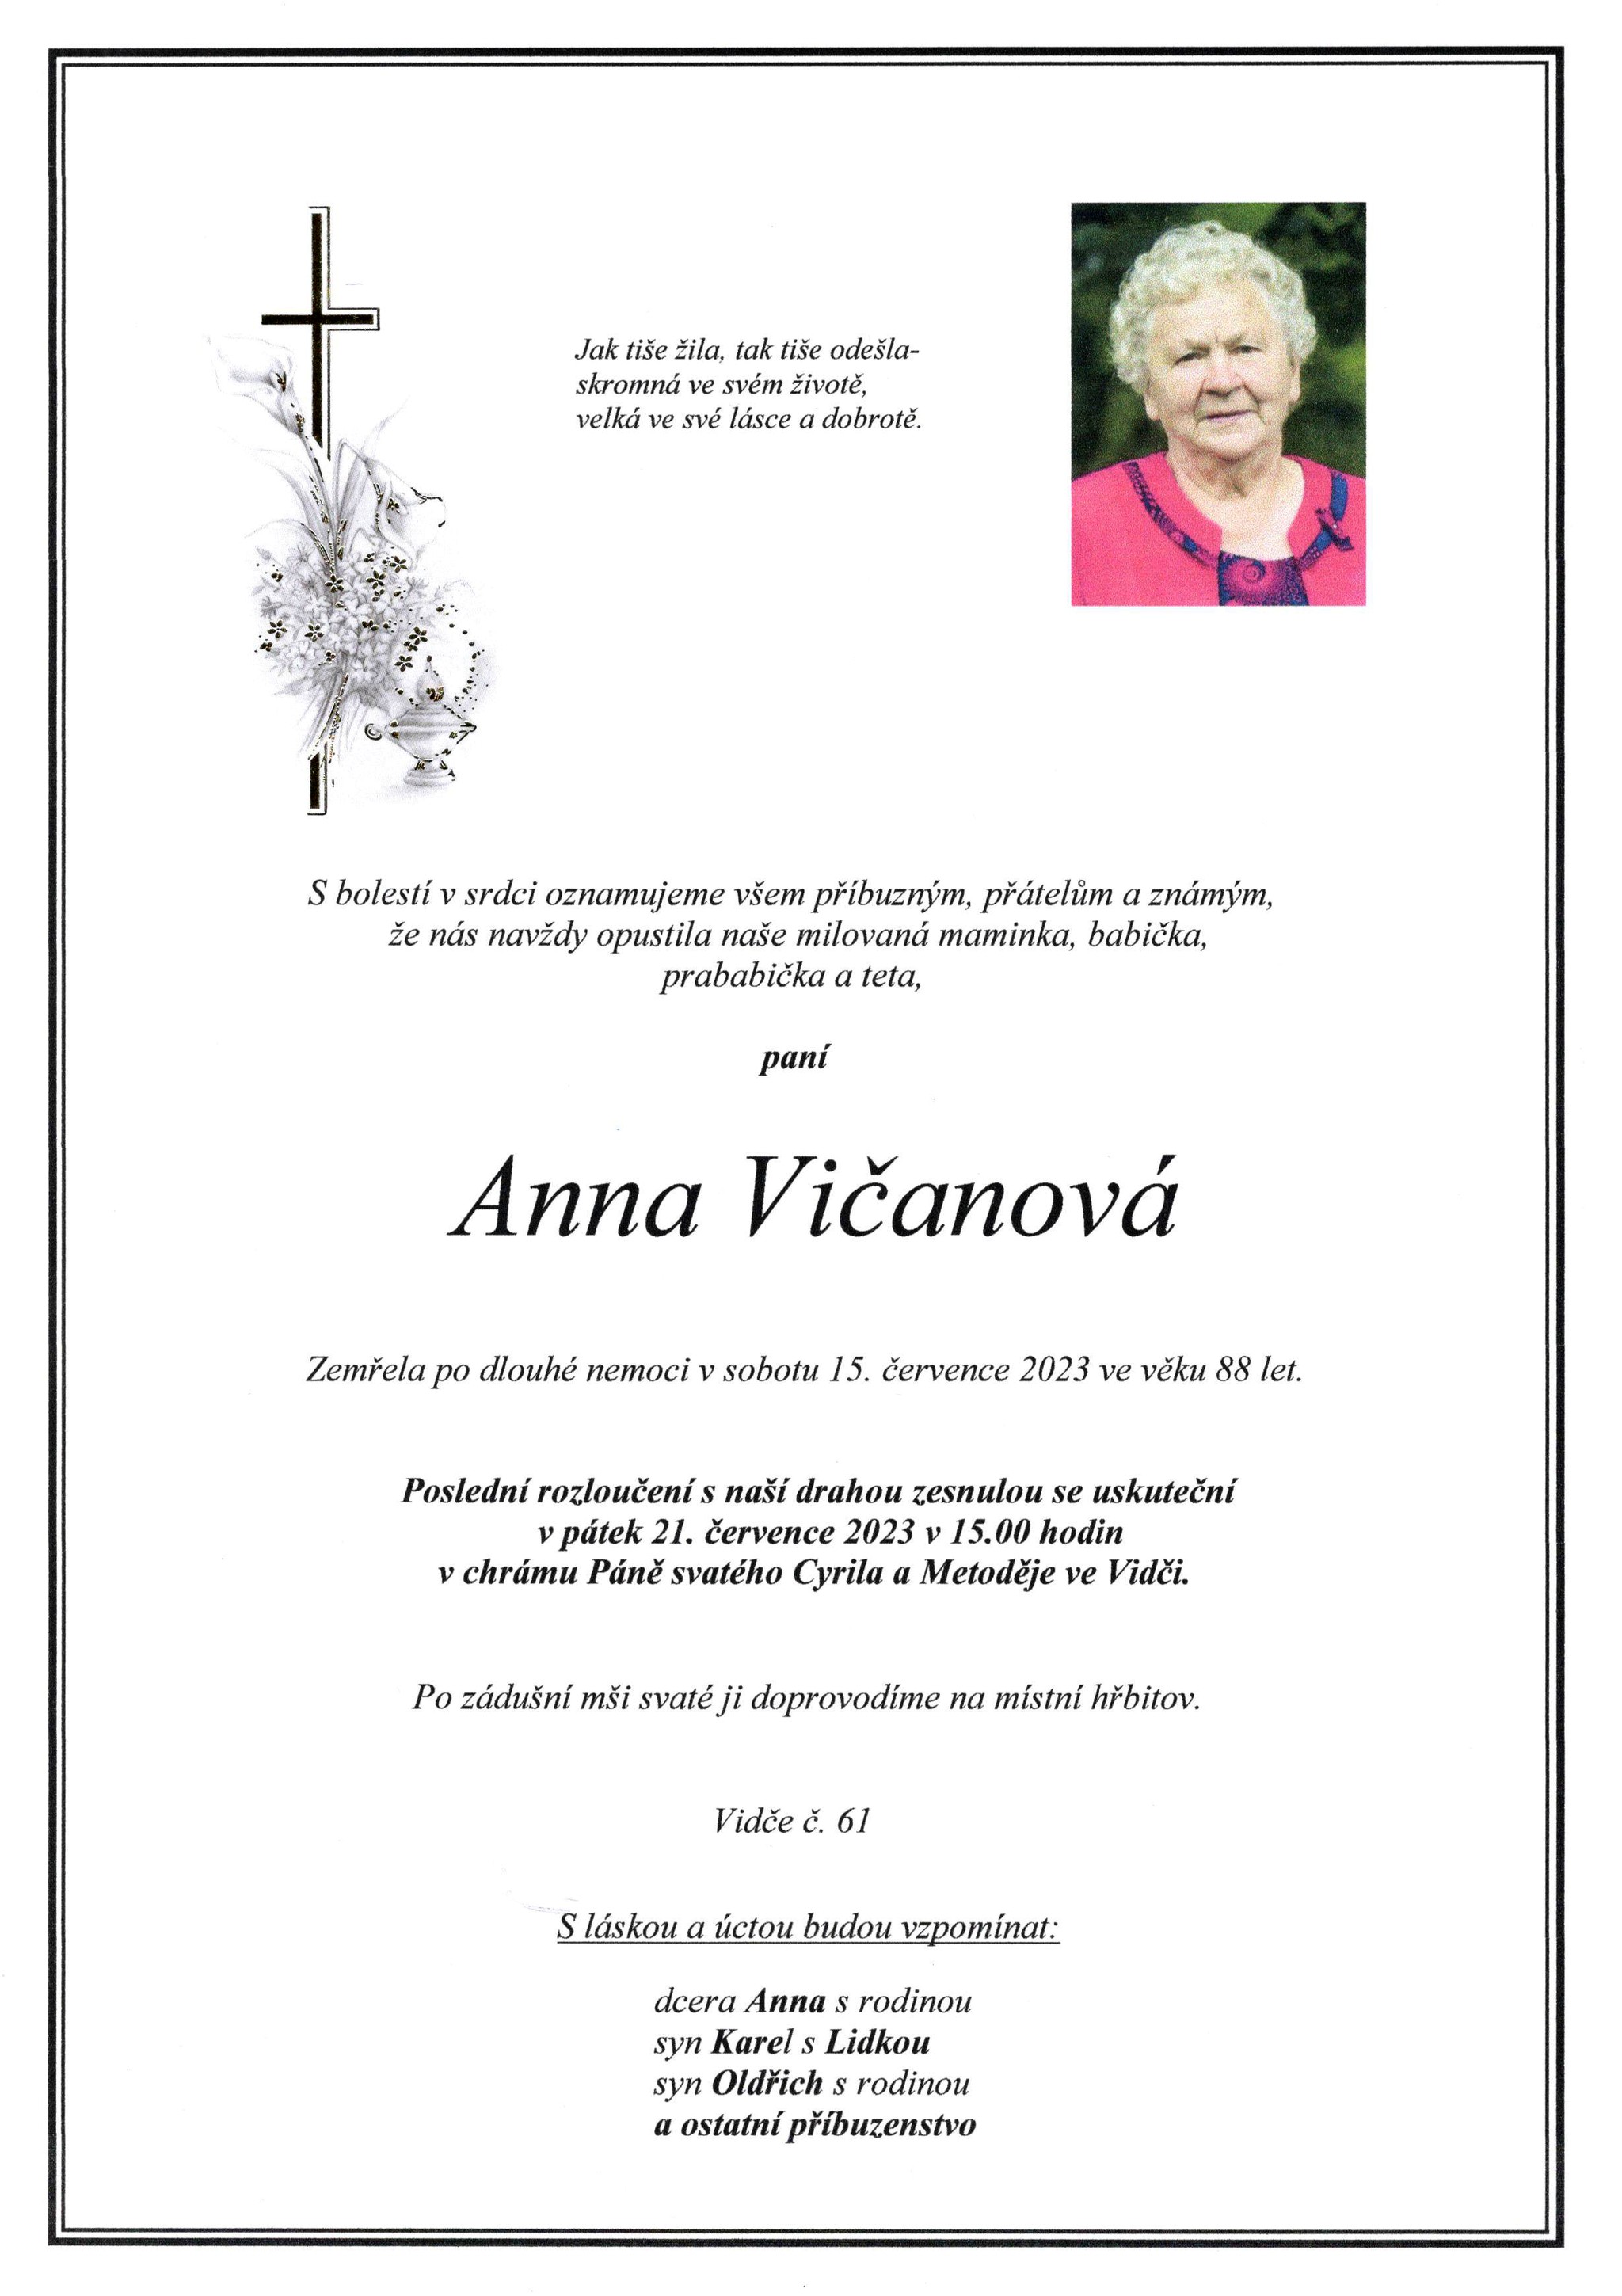 Anna Vičanová